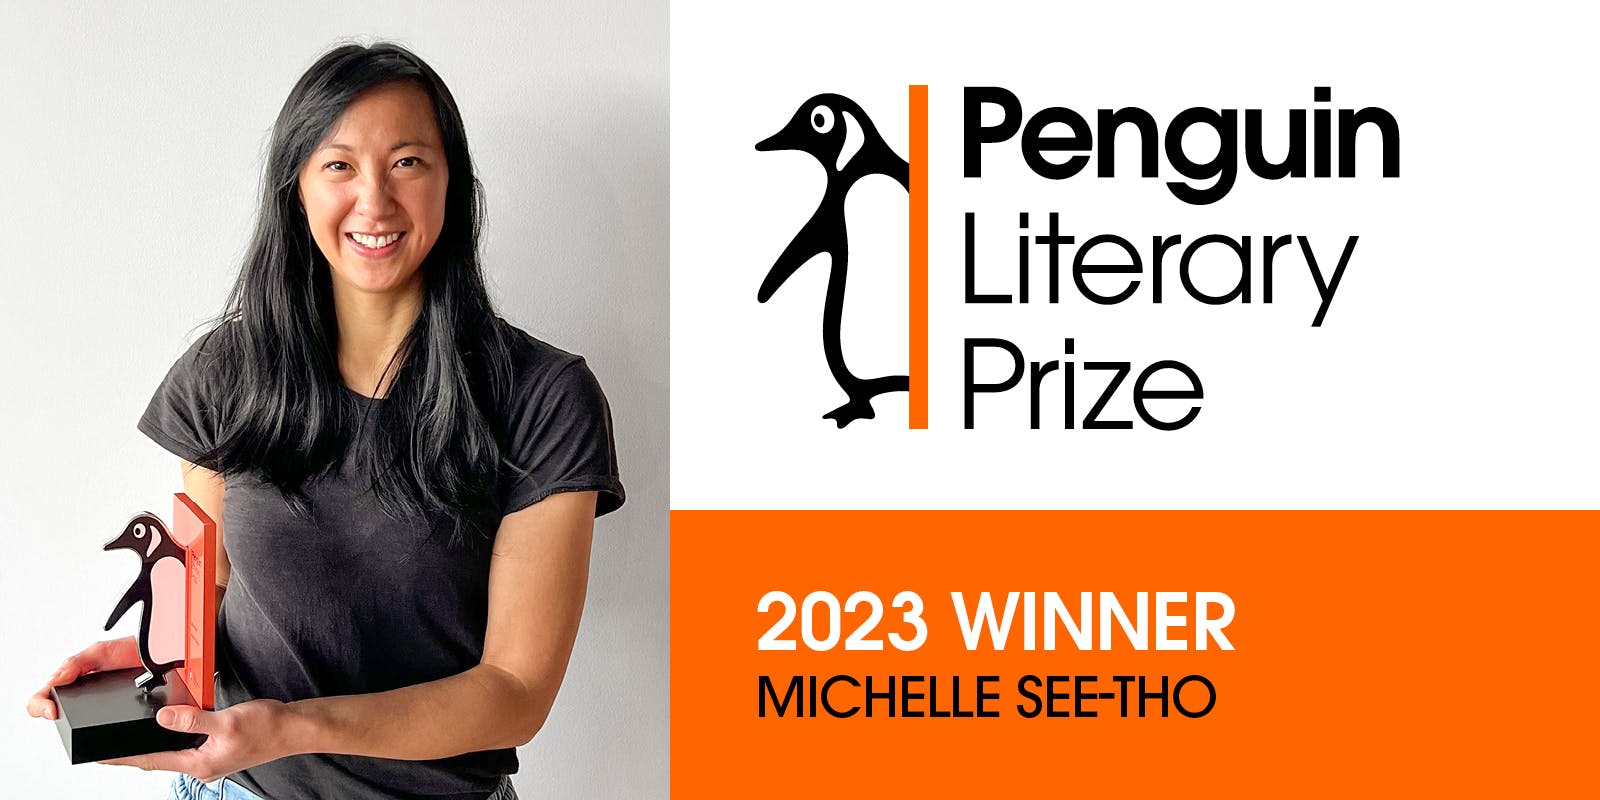 Penguin Literary Prize 2023 Winner Announced